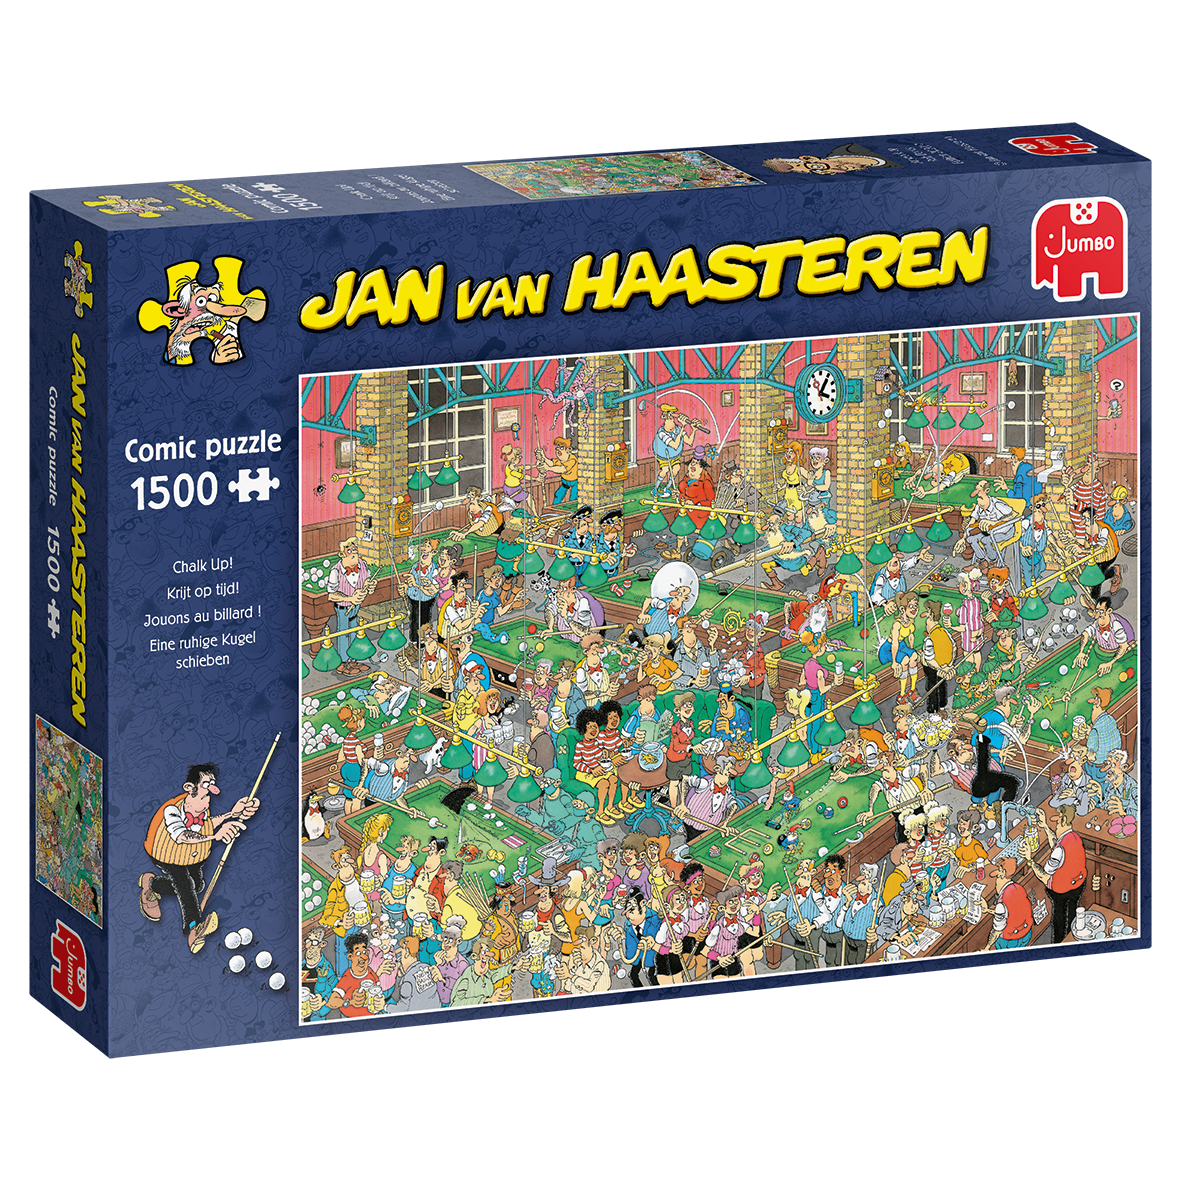 Jan van Haasteren Krijt Op Tijd!